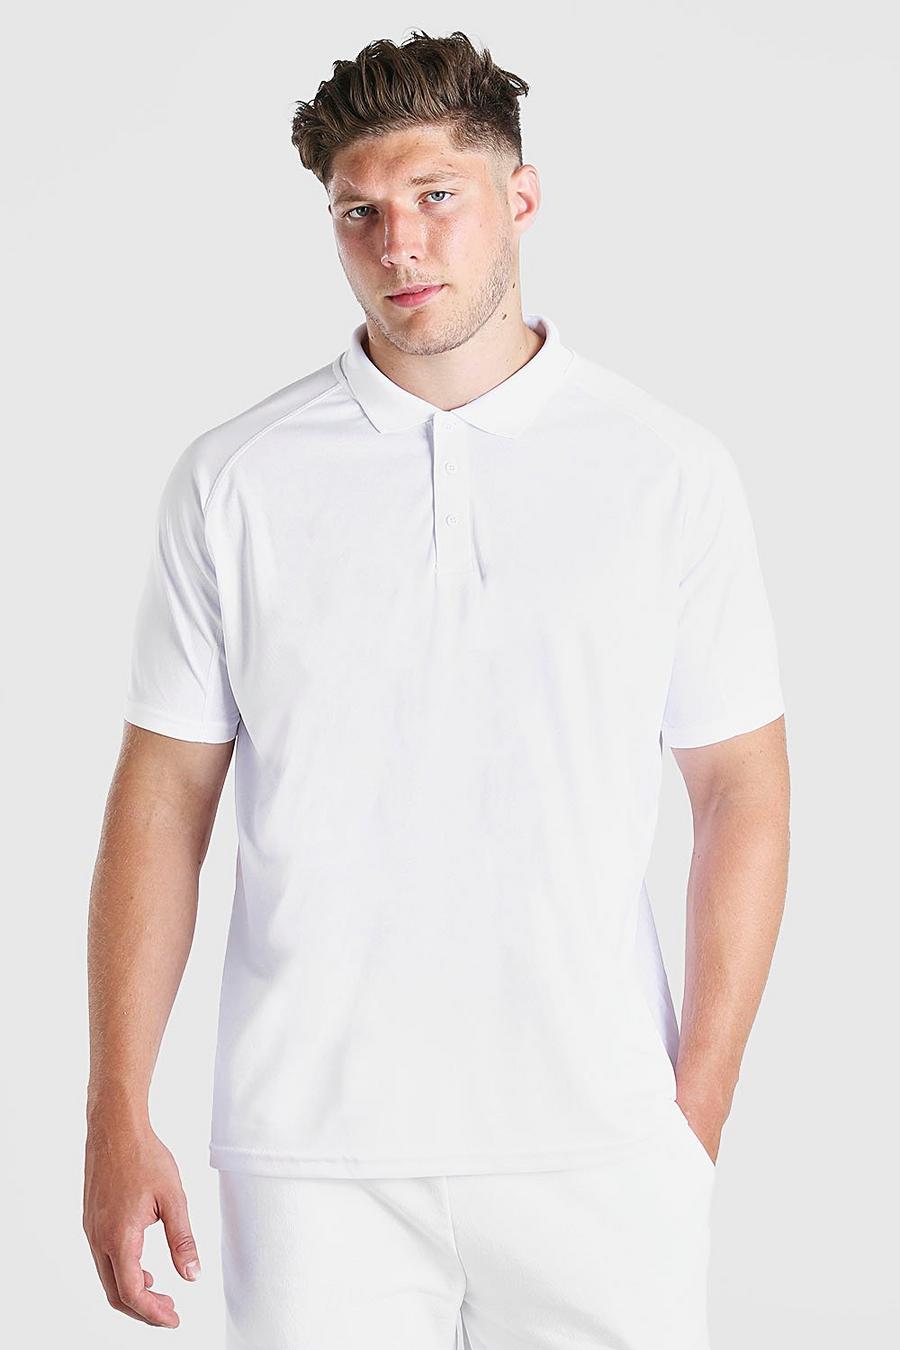 לבן חולצת פולו נמתחת בסגנון רגלן לגברים גדולים וגבוהים  image number 1